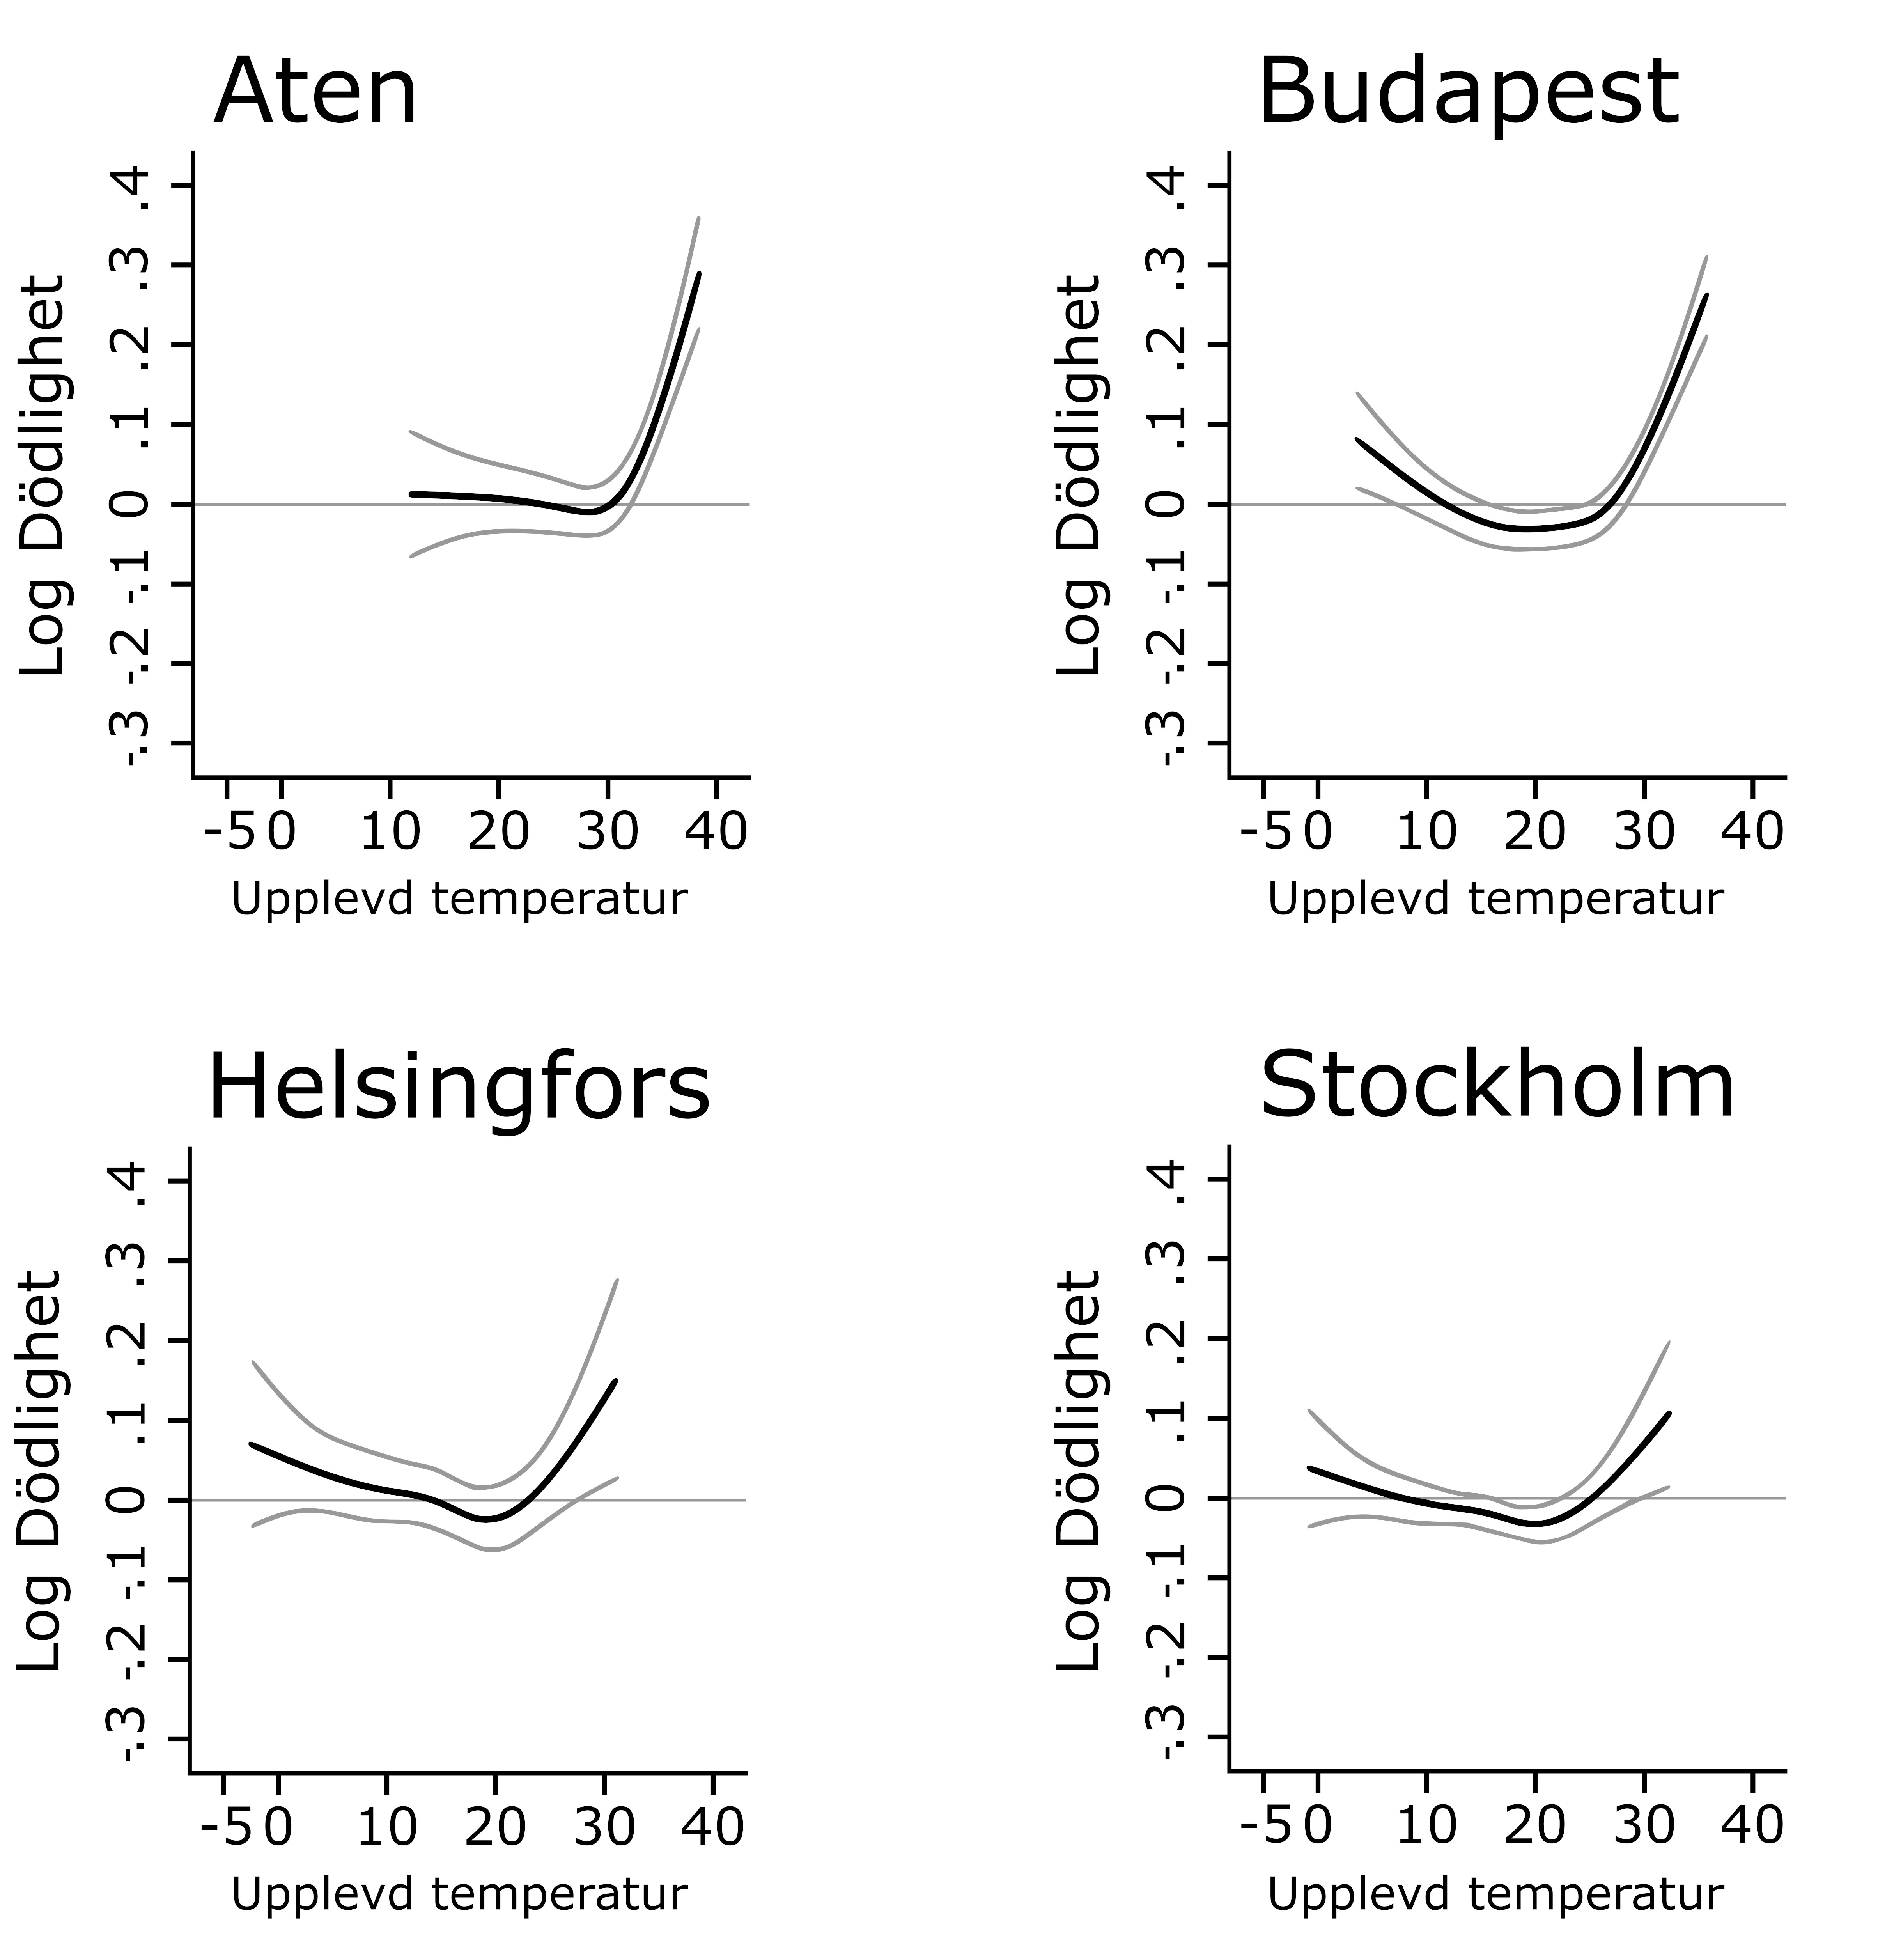 Tre samband mellan höga temperaturer och hälsoutfall i städerna Aten, Budapest, Helsingfors och Stockholm.